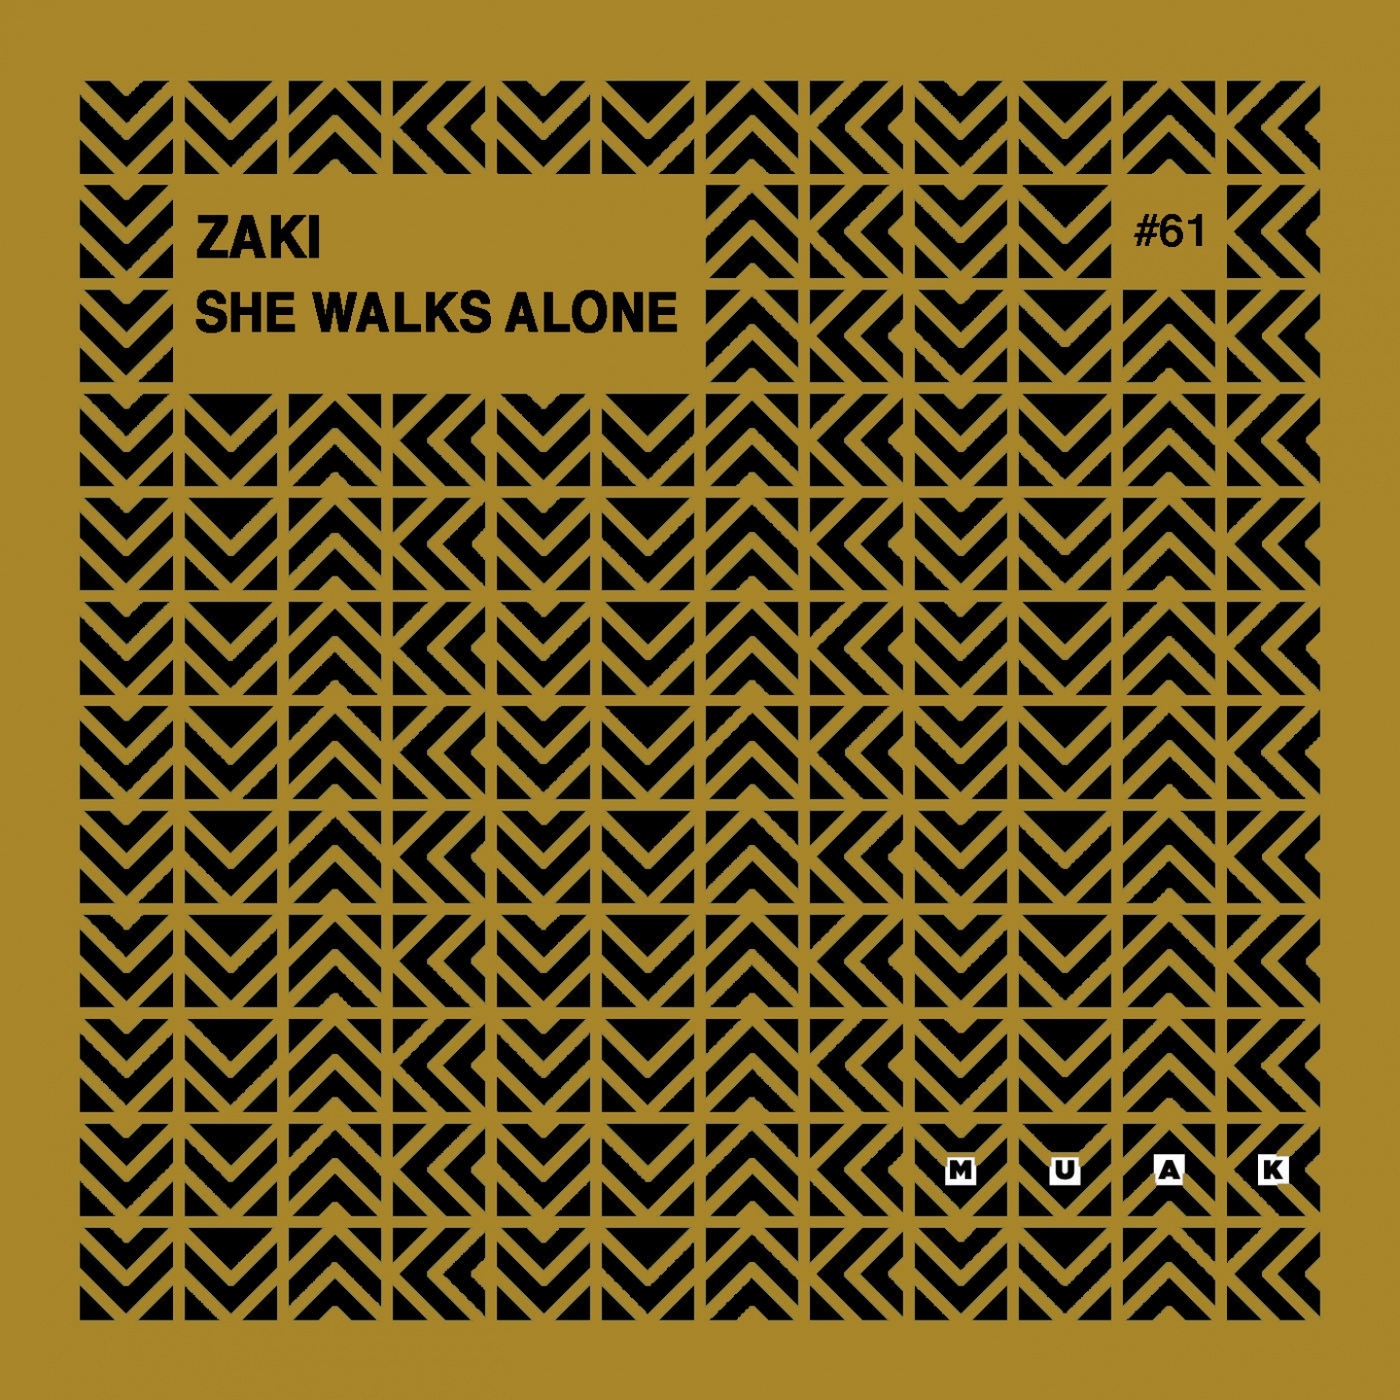 Zaki - She Walks Alone / Muak Music